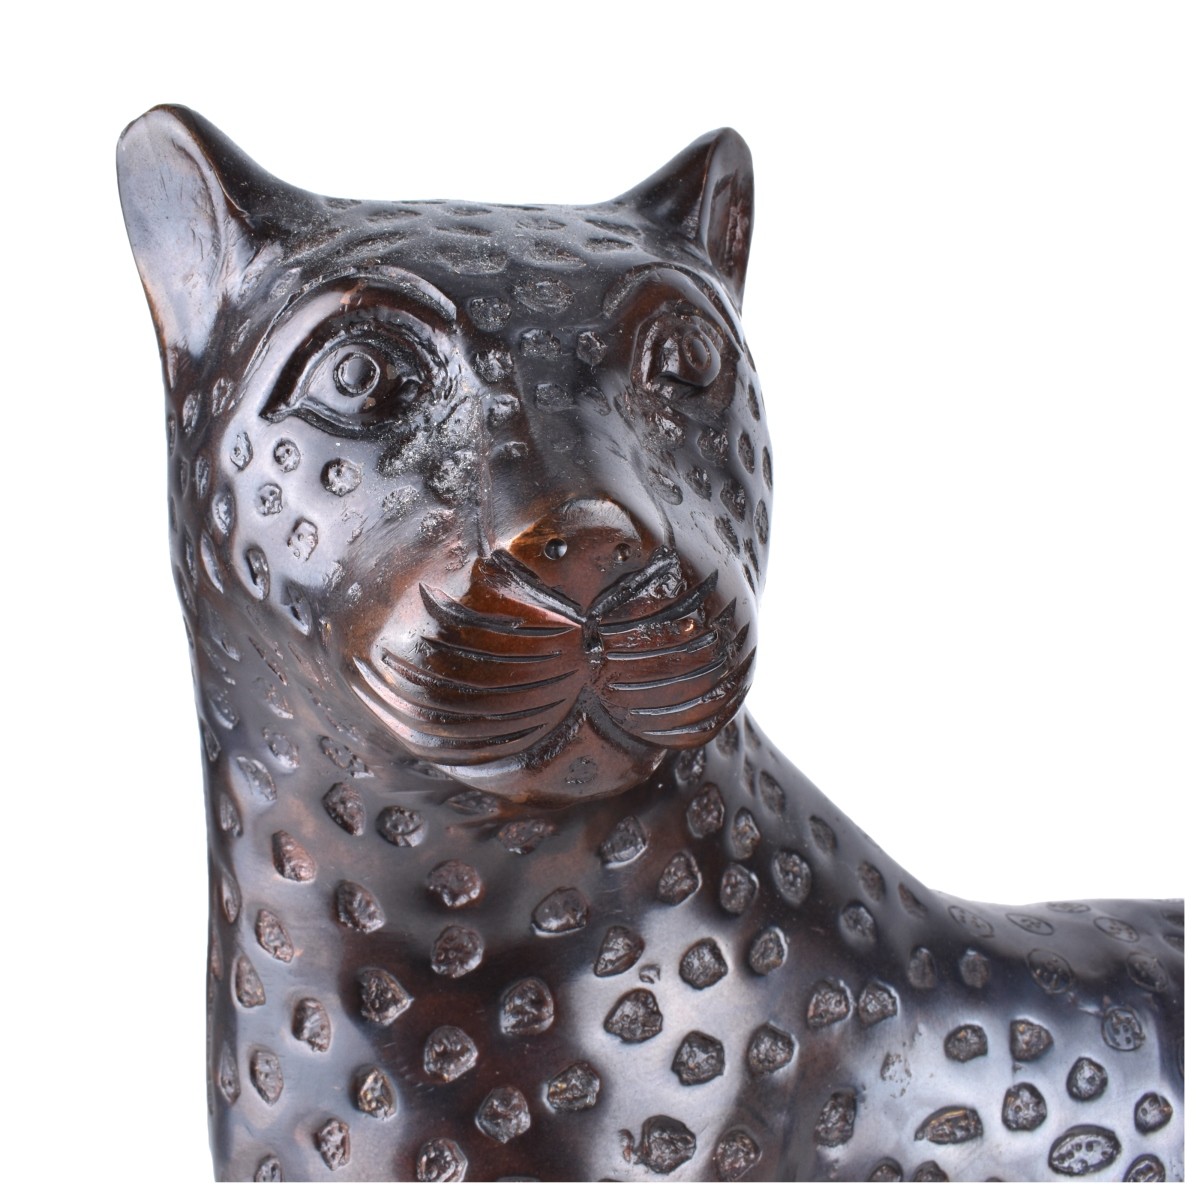 Modern Bronze Sculpture of a Cheetah